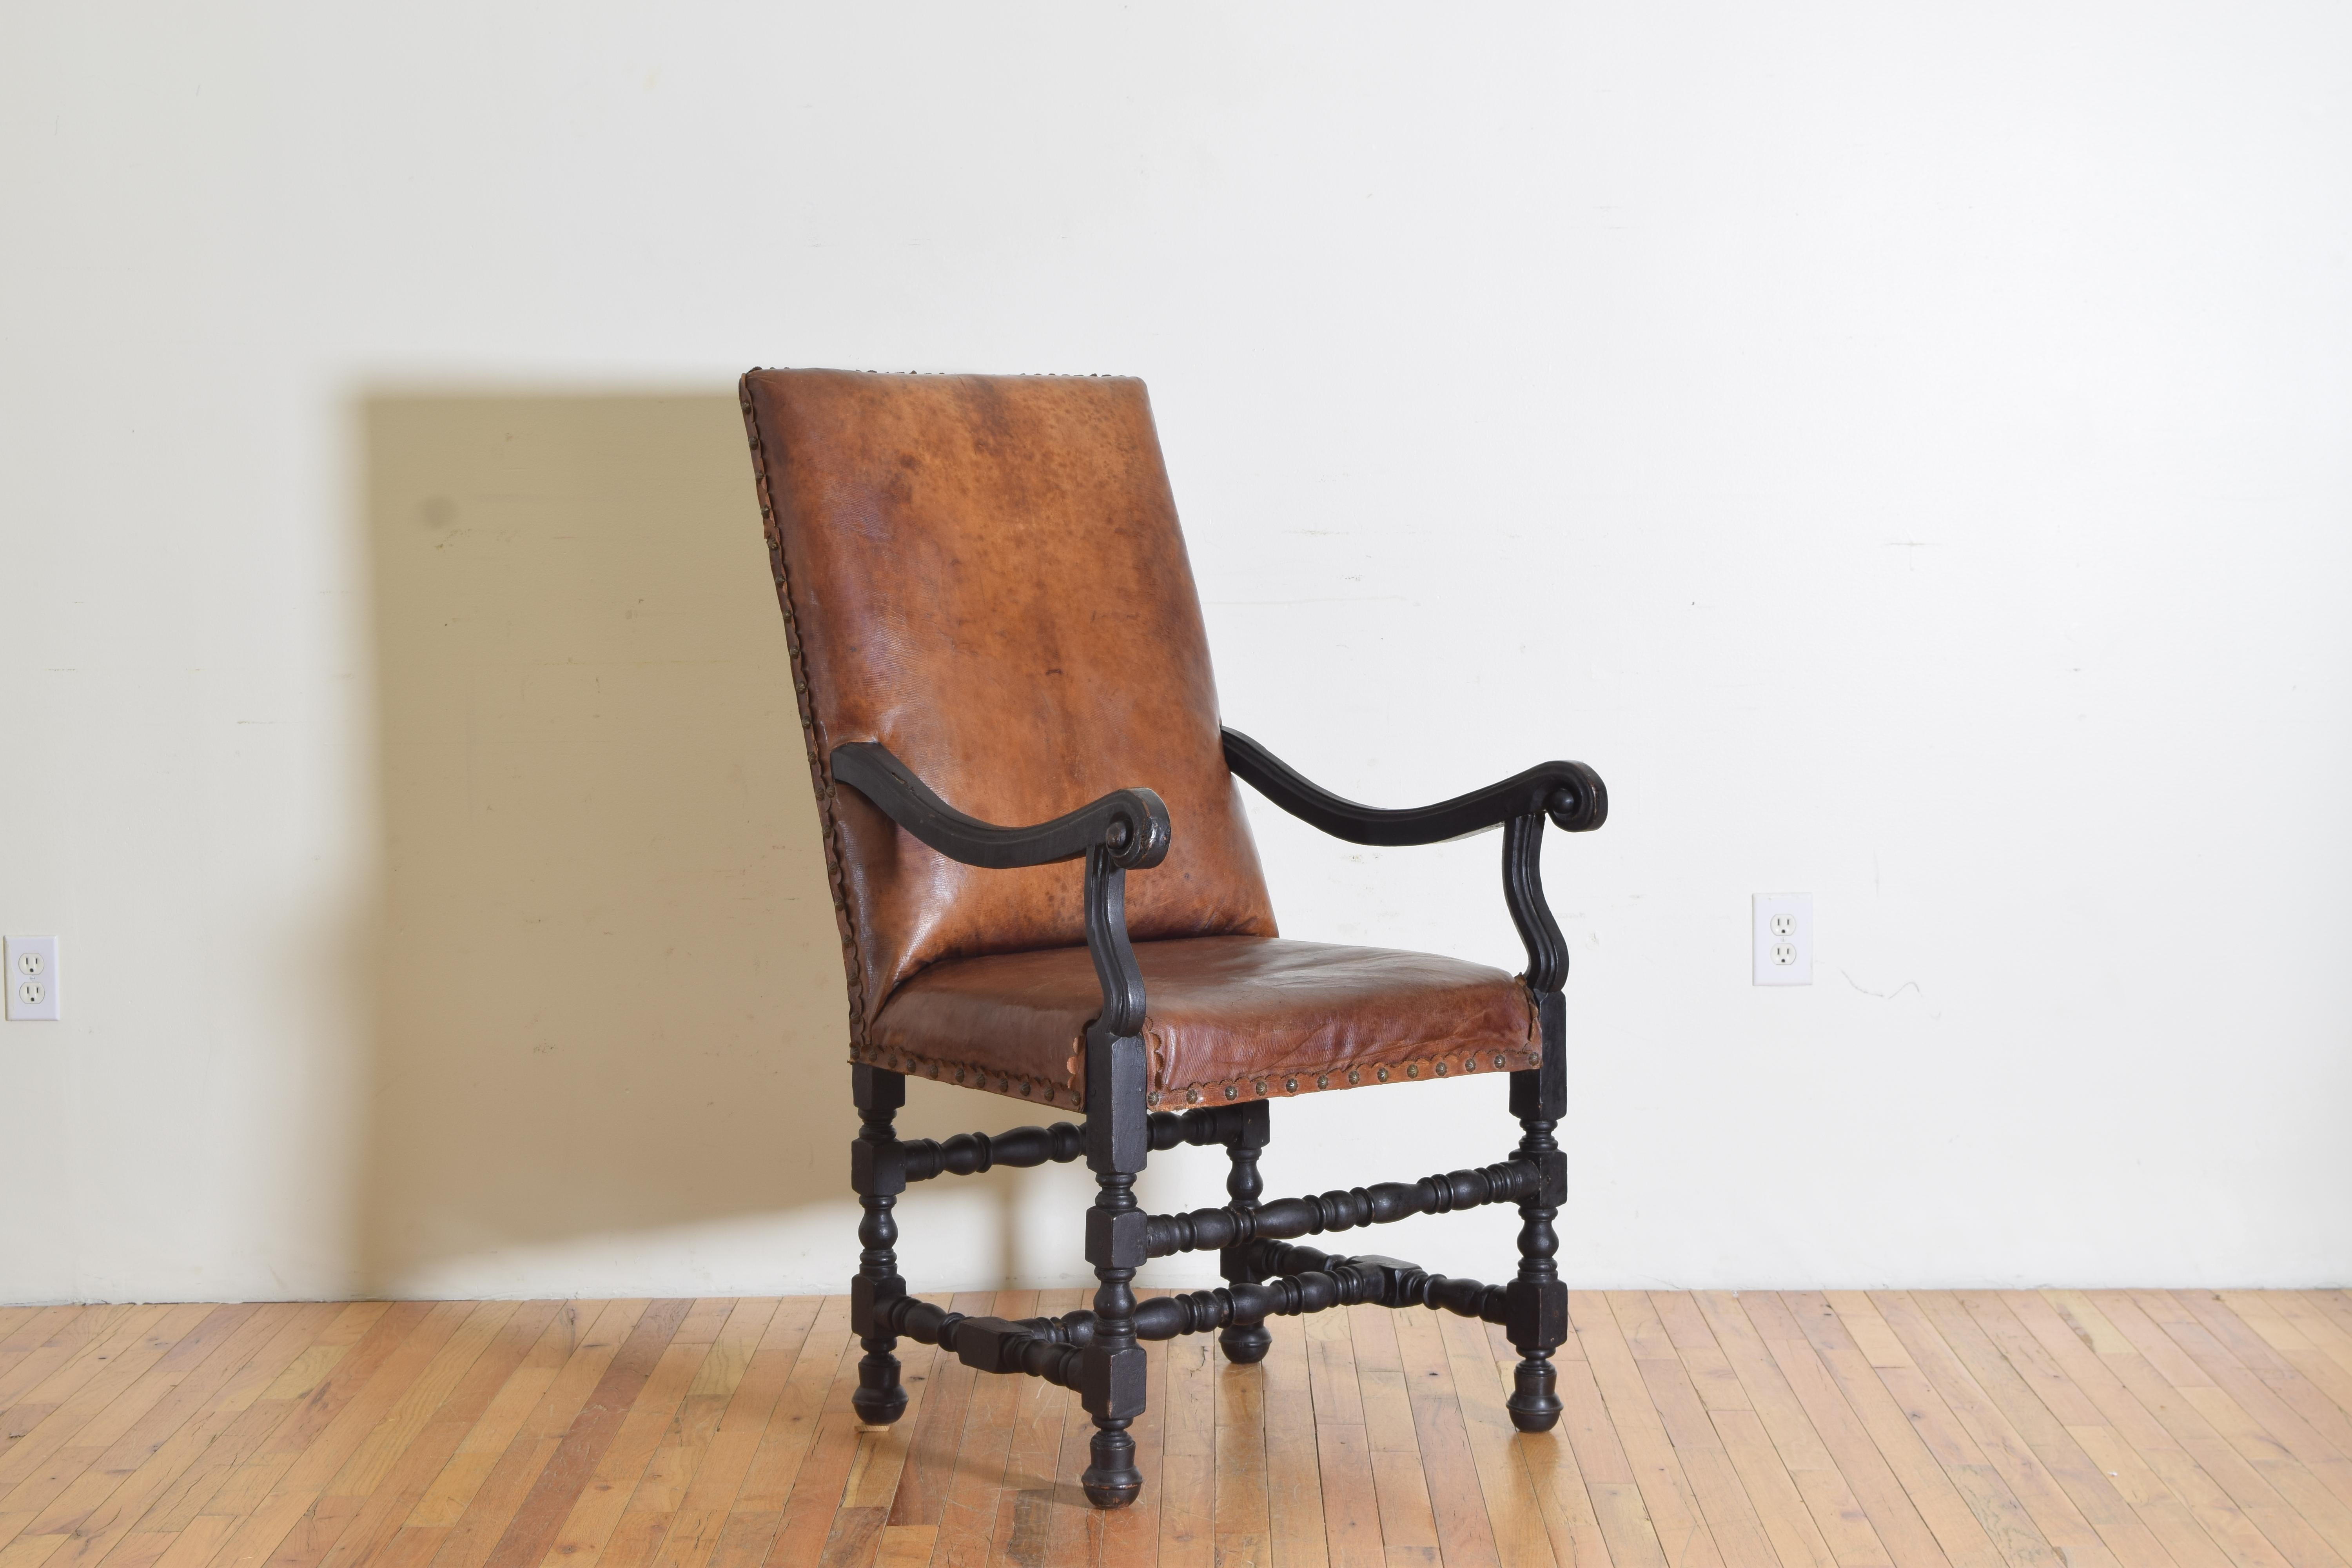 mit einer schrägen rechteckigen Rückenlehne und einem engen Sitz, der mit antikem Leder gepolstert und mit Messingnagelköpfen verziert ist, wobei der Stuhl seine antike ebonisierte Oberfläche beibehält.